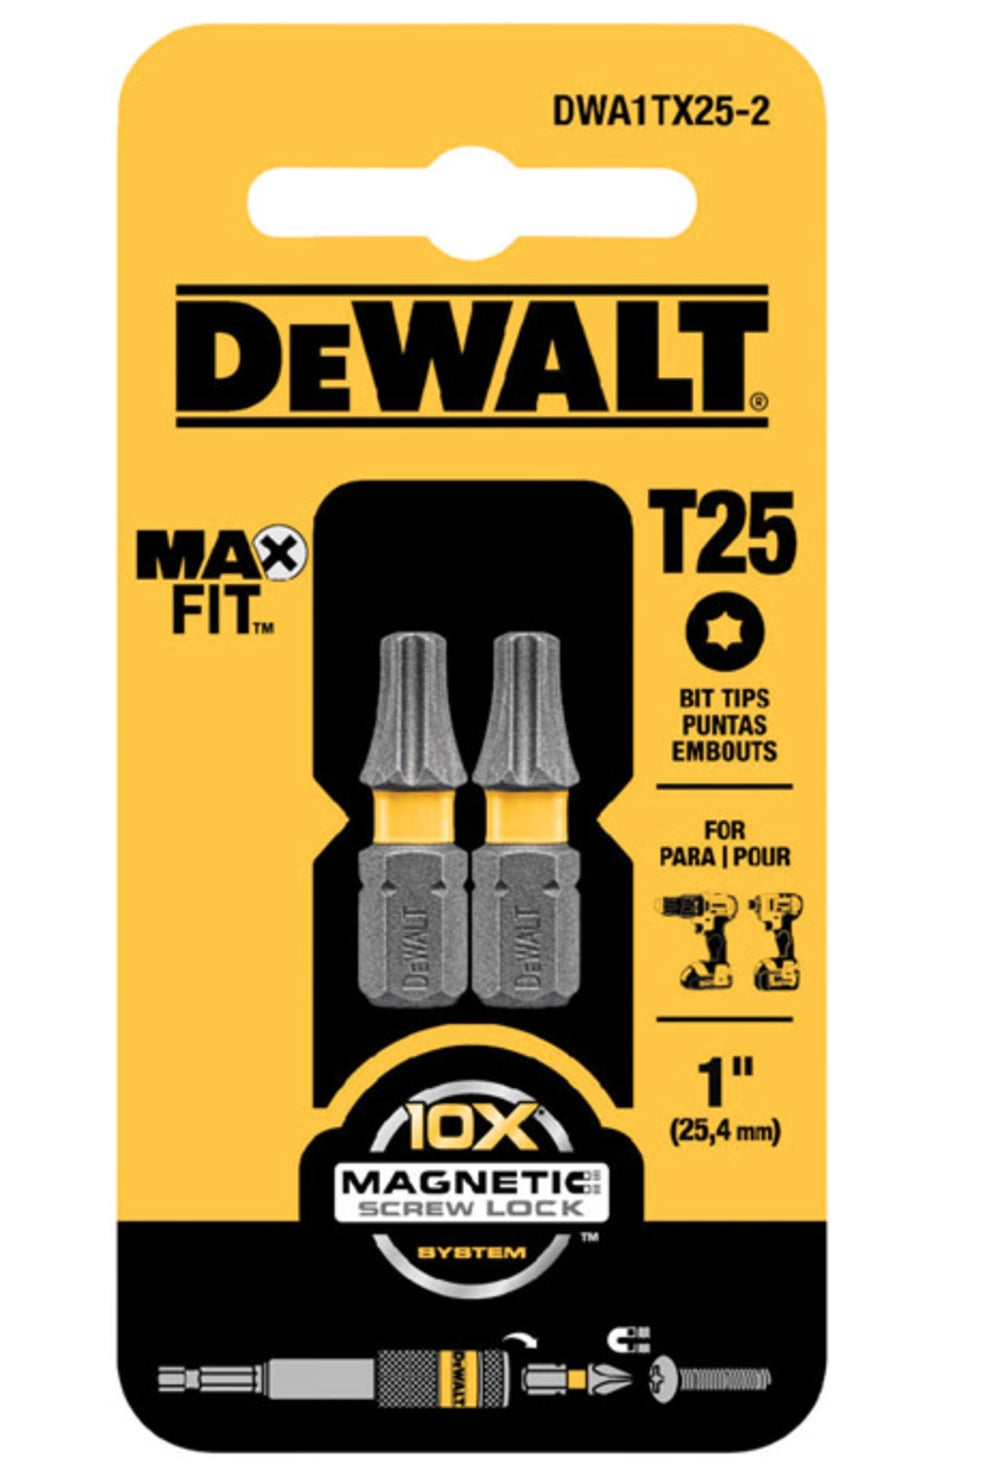 DeWalt DWA1TX25-2 MAXFIT Torx Insert Bits, T25 x 1"